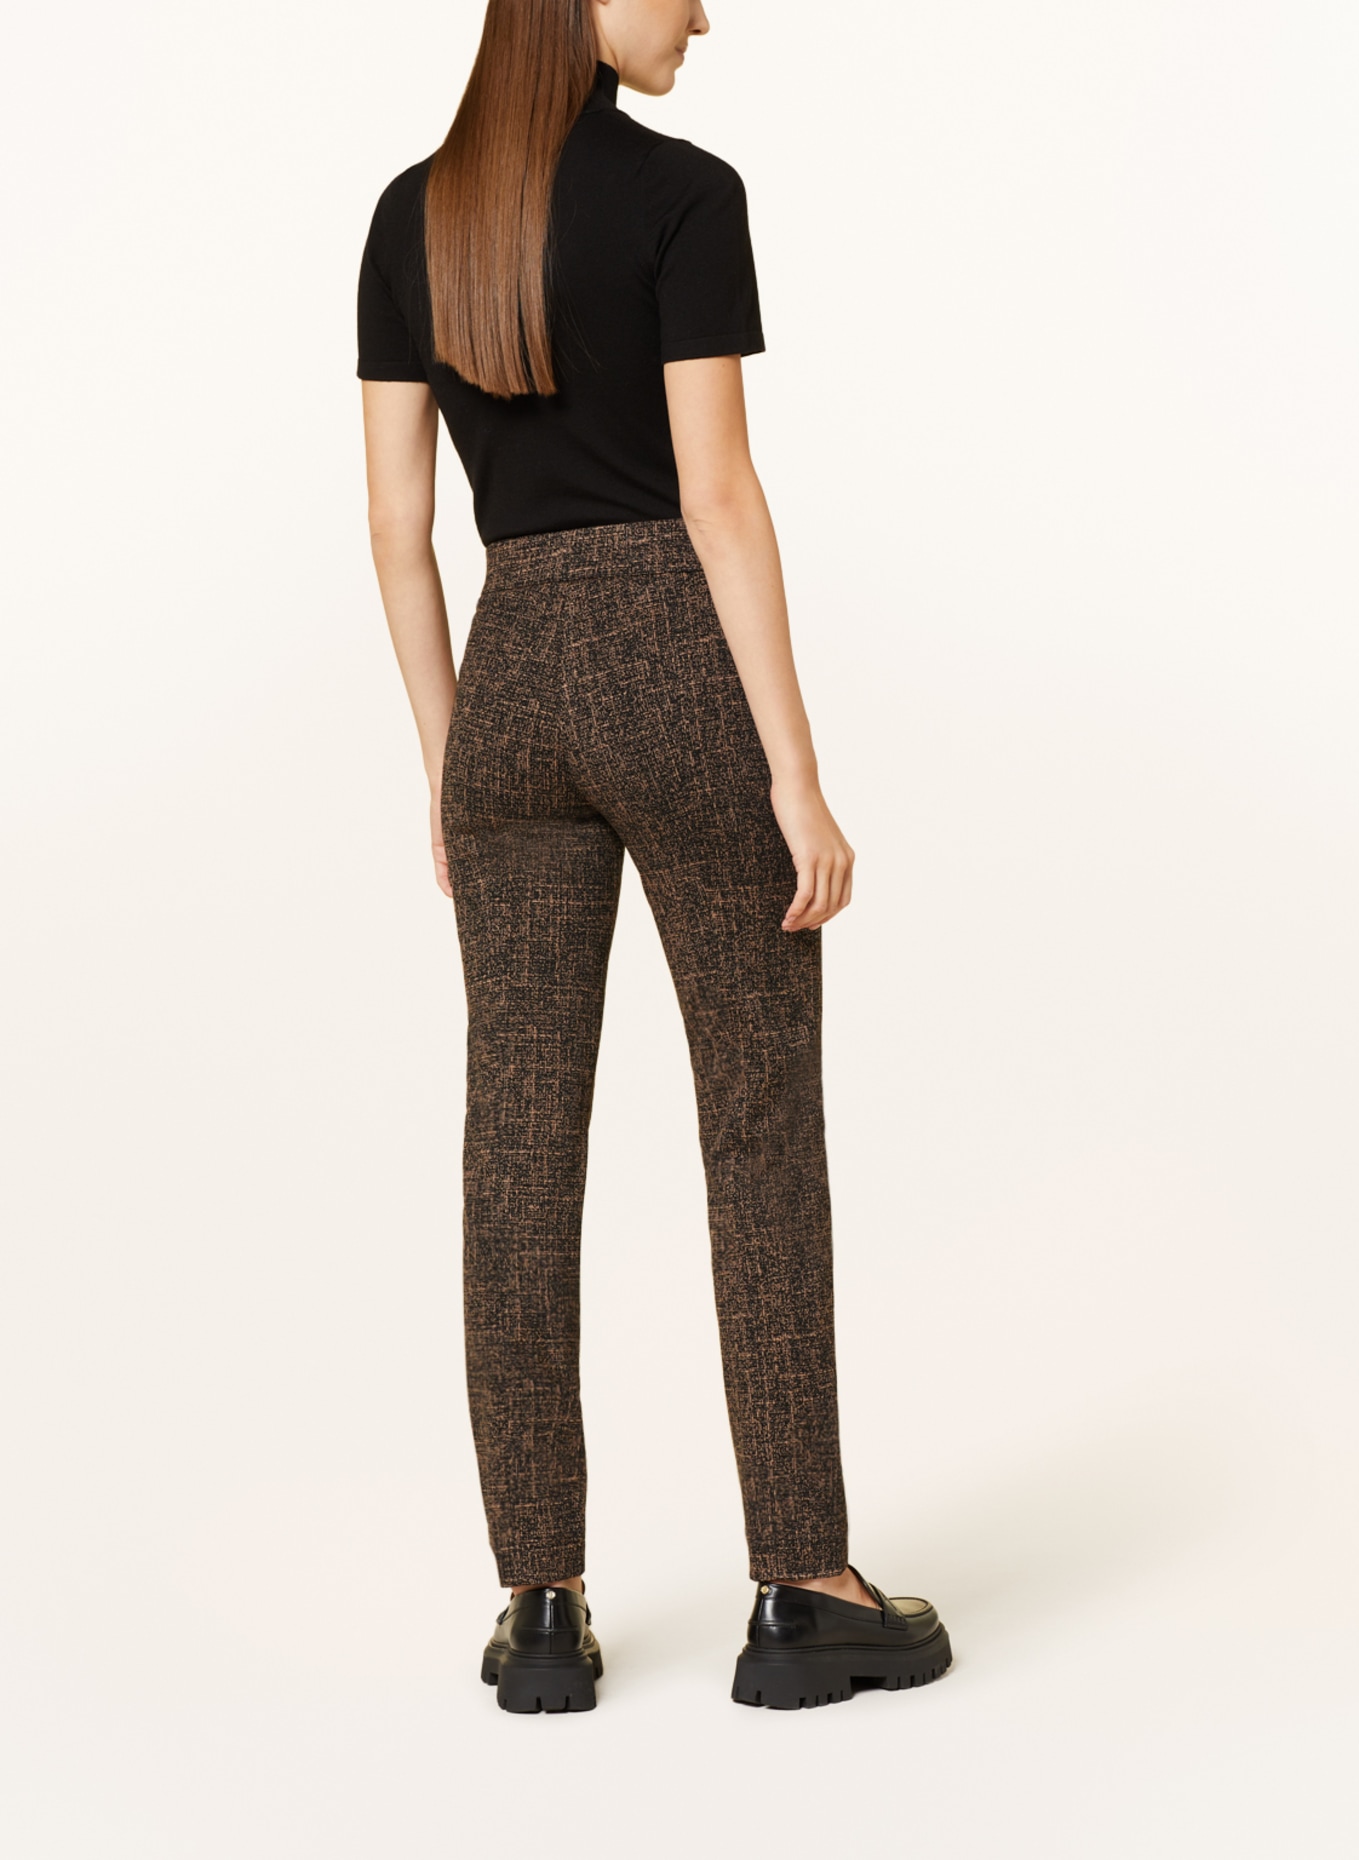 RAFFAELLO ROSSI Jersey trousers OTTI, Color: DARK BROWN/ BEIGE (Image 3)